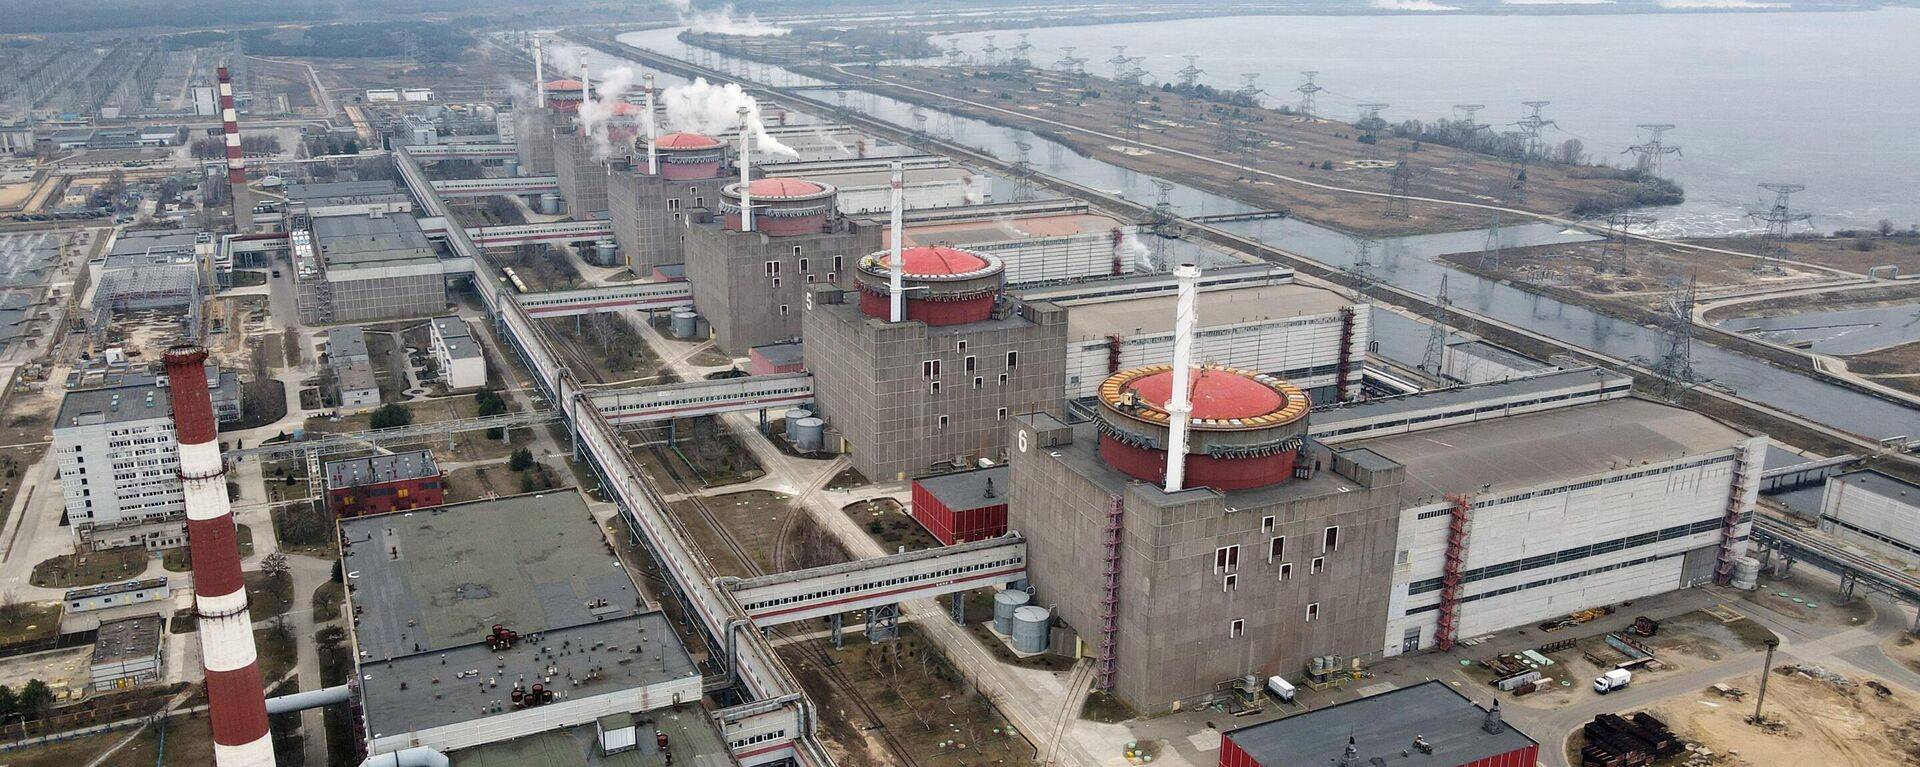 La planta nuclear de Zaporiyia - Sputnik Mundo, 1920, 18.11.2022